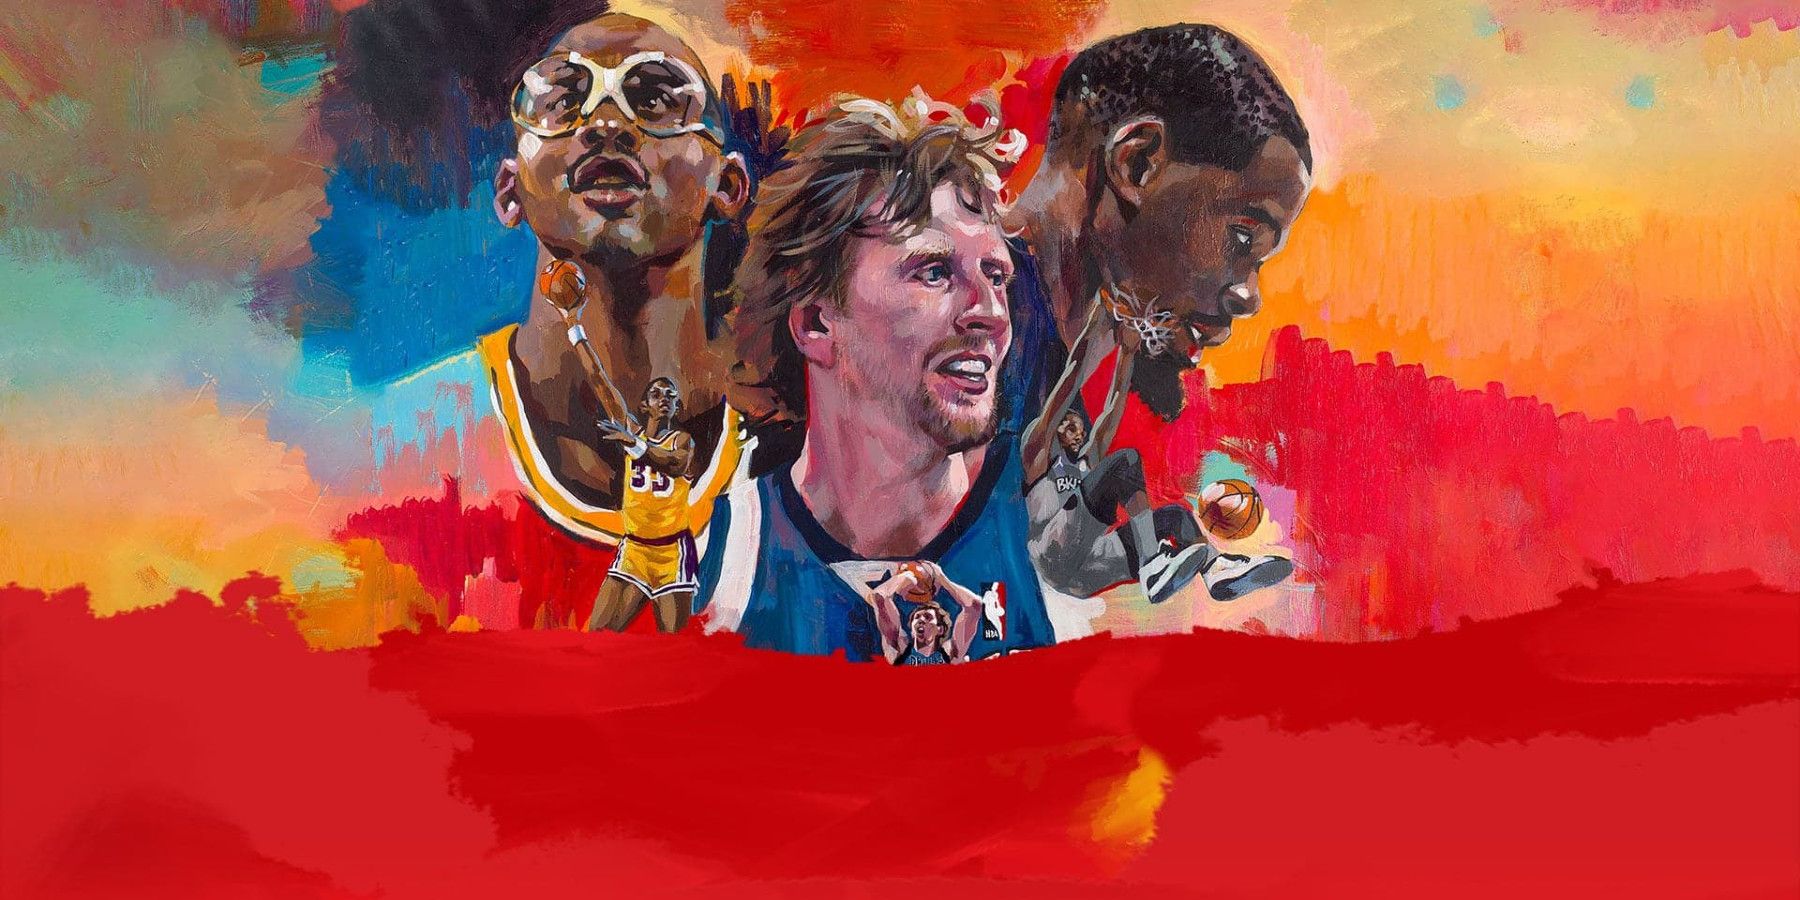 NBA 2k22 Mural